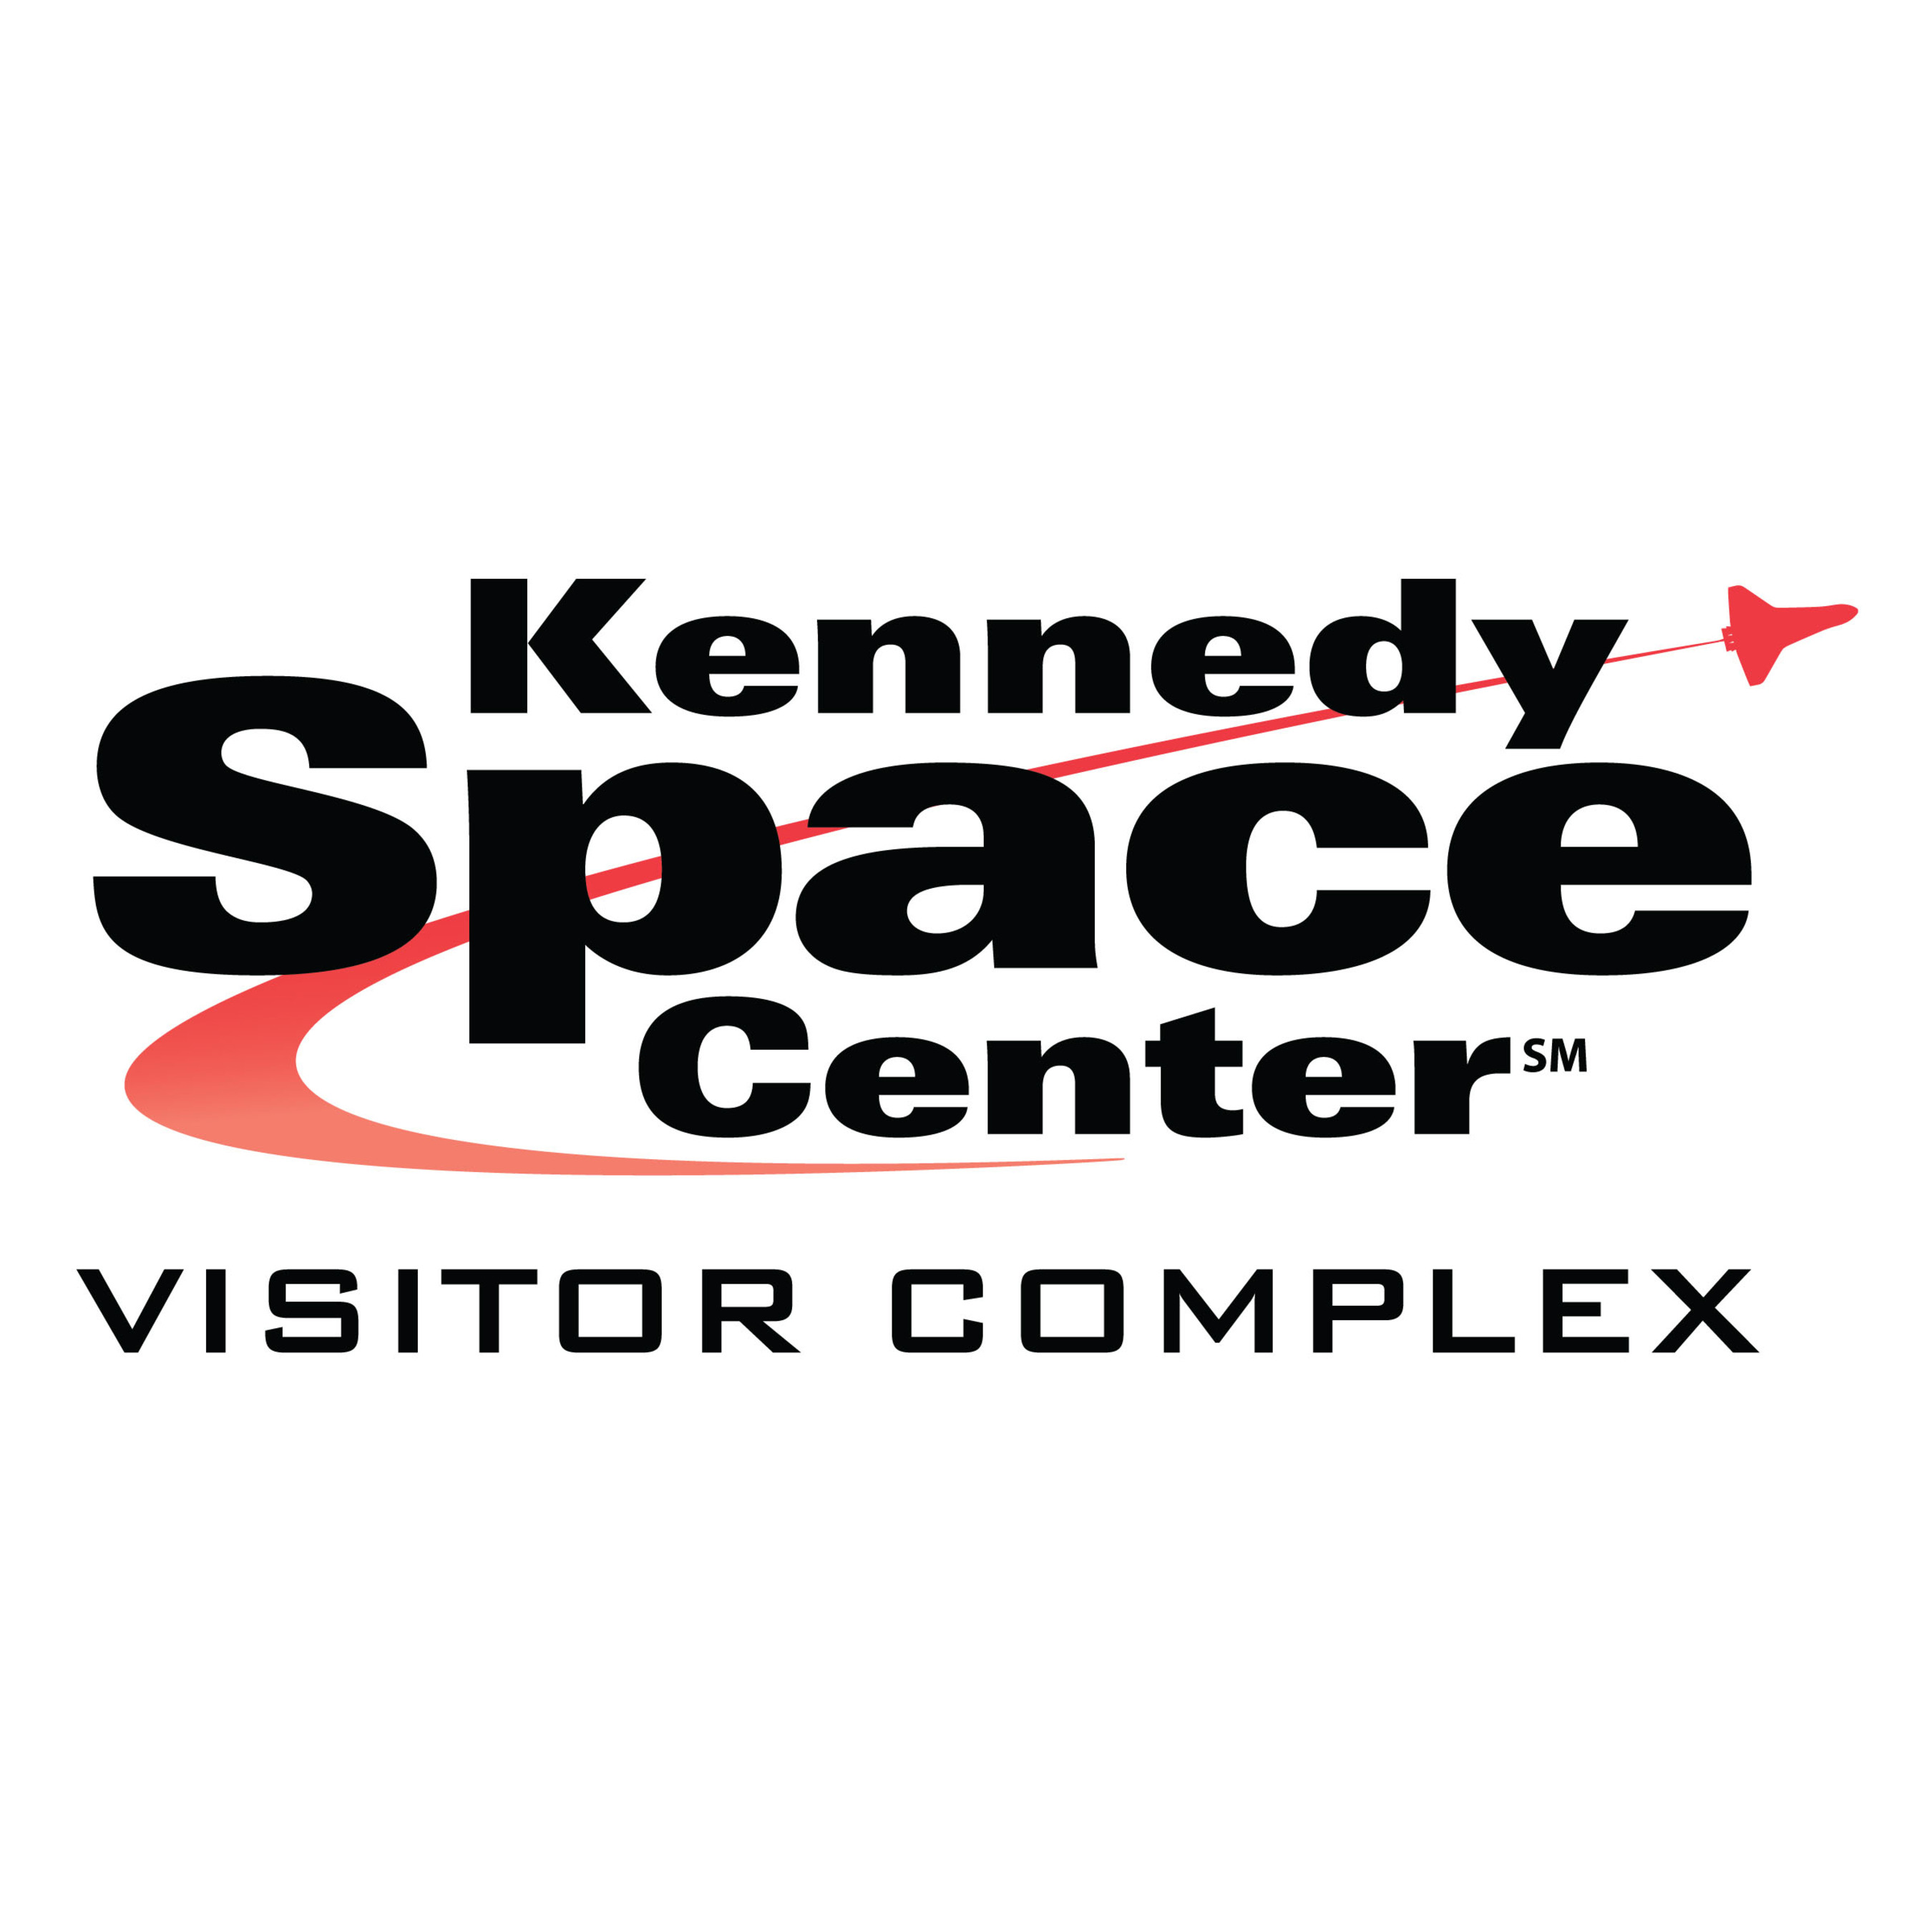 Kennedy Space Center Visitor Complex. (PRNewsFoto/Kennedy Space Center Visitor Complex) (PRNewsFoto/) (PRNewsFoto/)